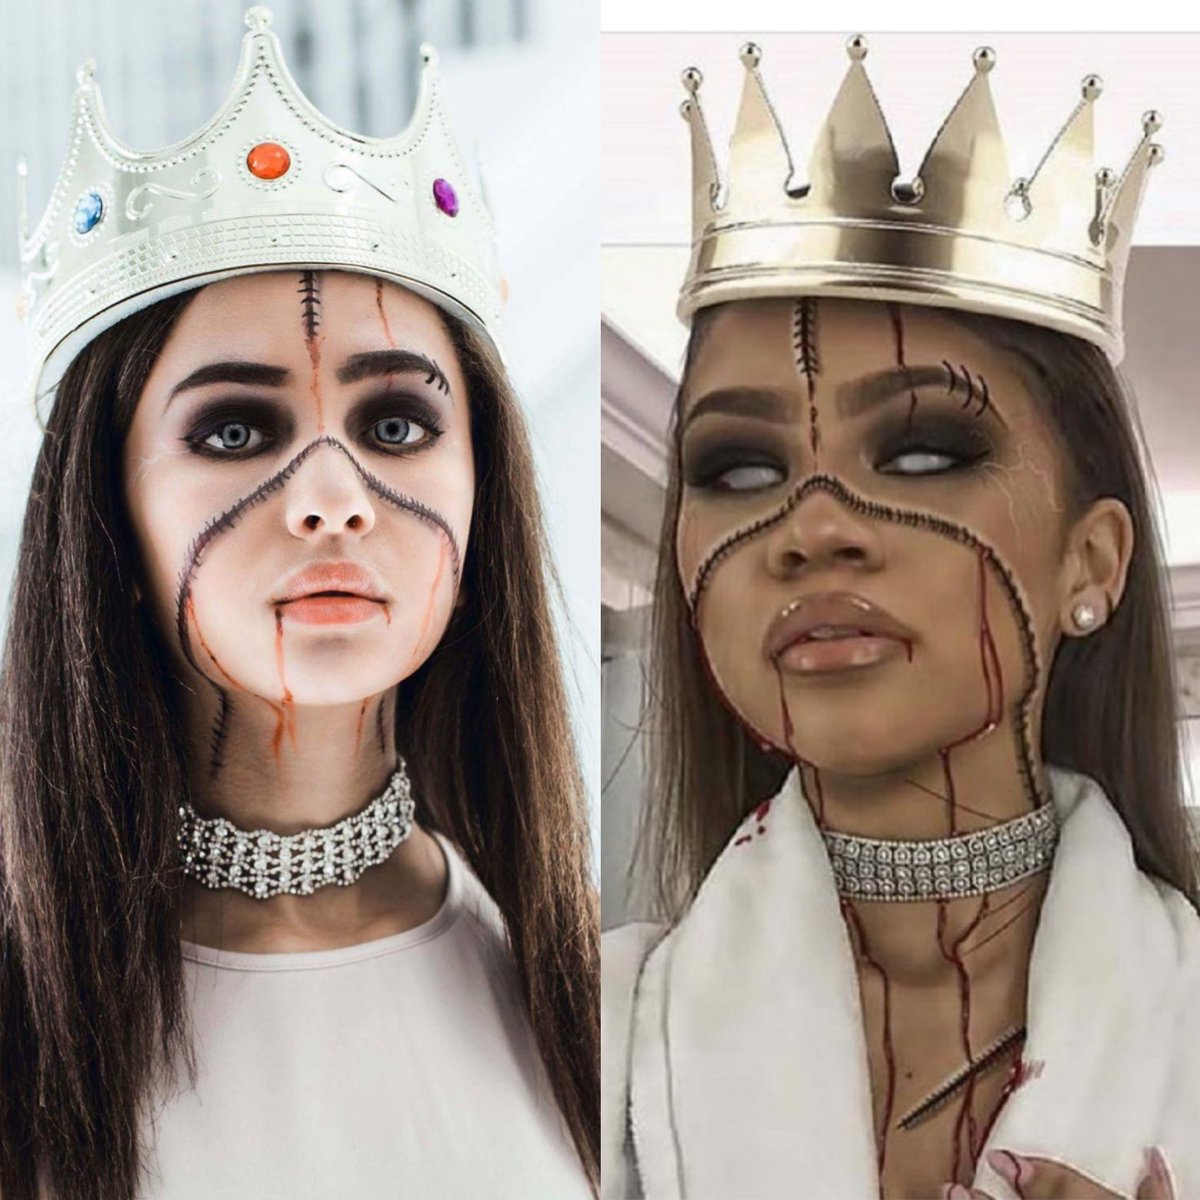 Jaden Alexis on Twitter: "My halloween inspiration! @Zendaya Romper #halloween #zombie #model #actress #teenmodel #costume #nola #bet #alldaya #zendaya https://t.co/SJOSFiRnHf"